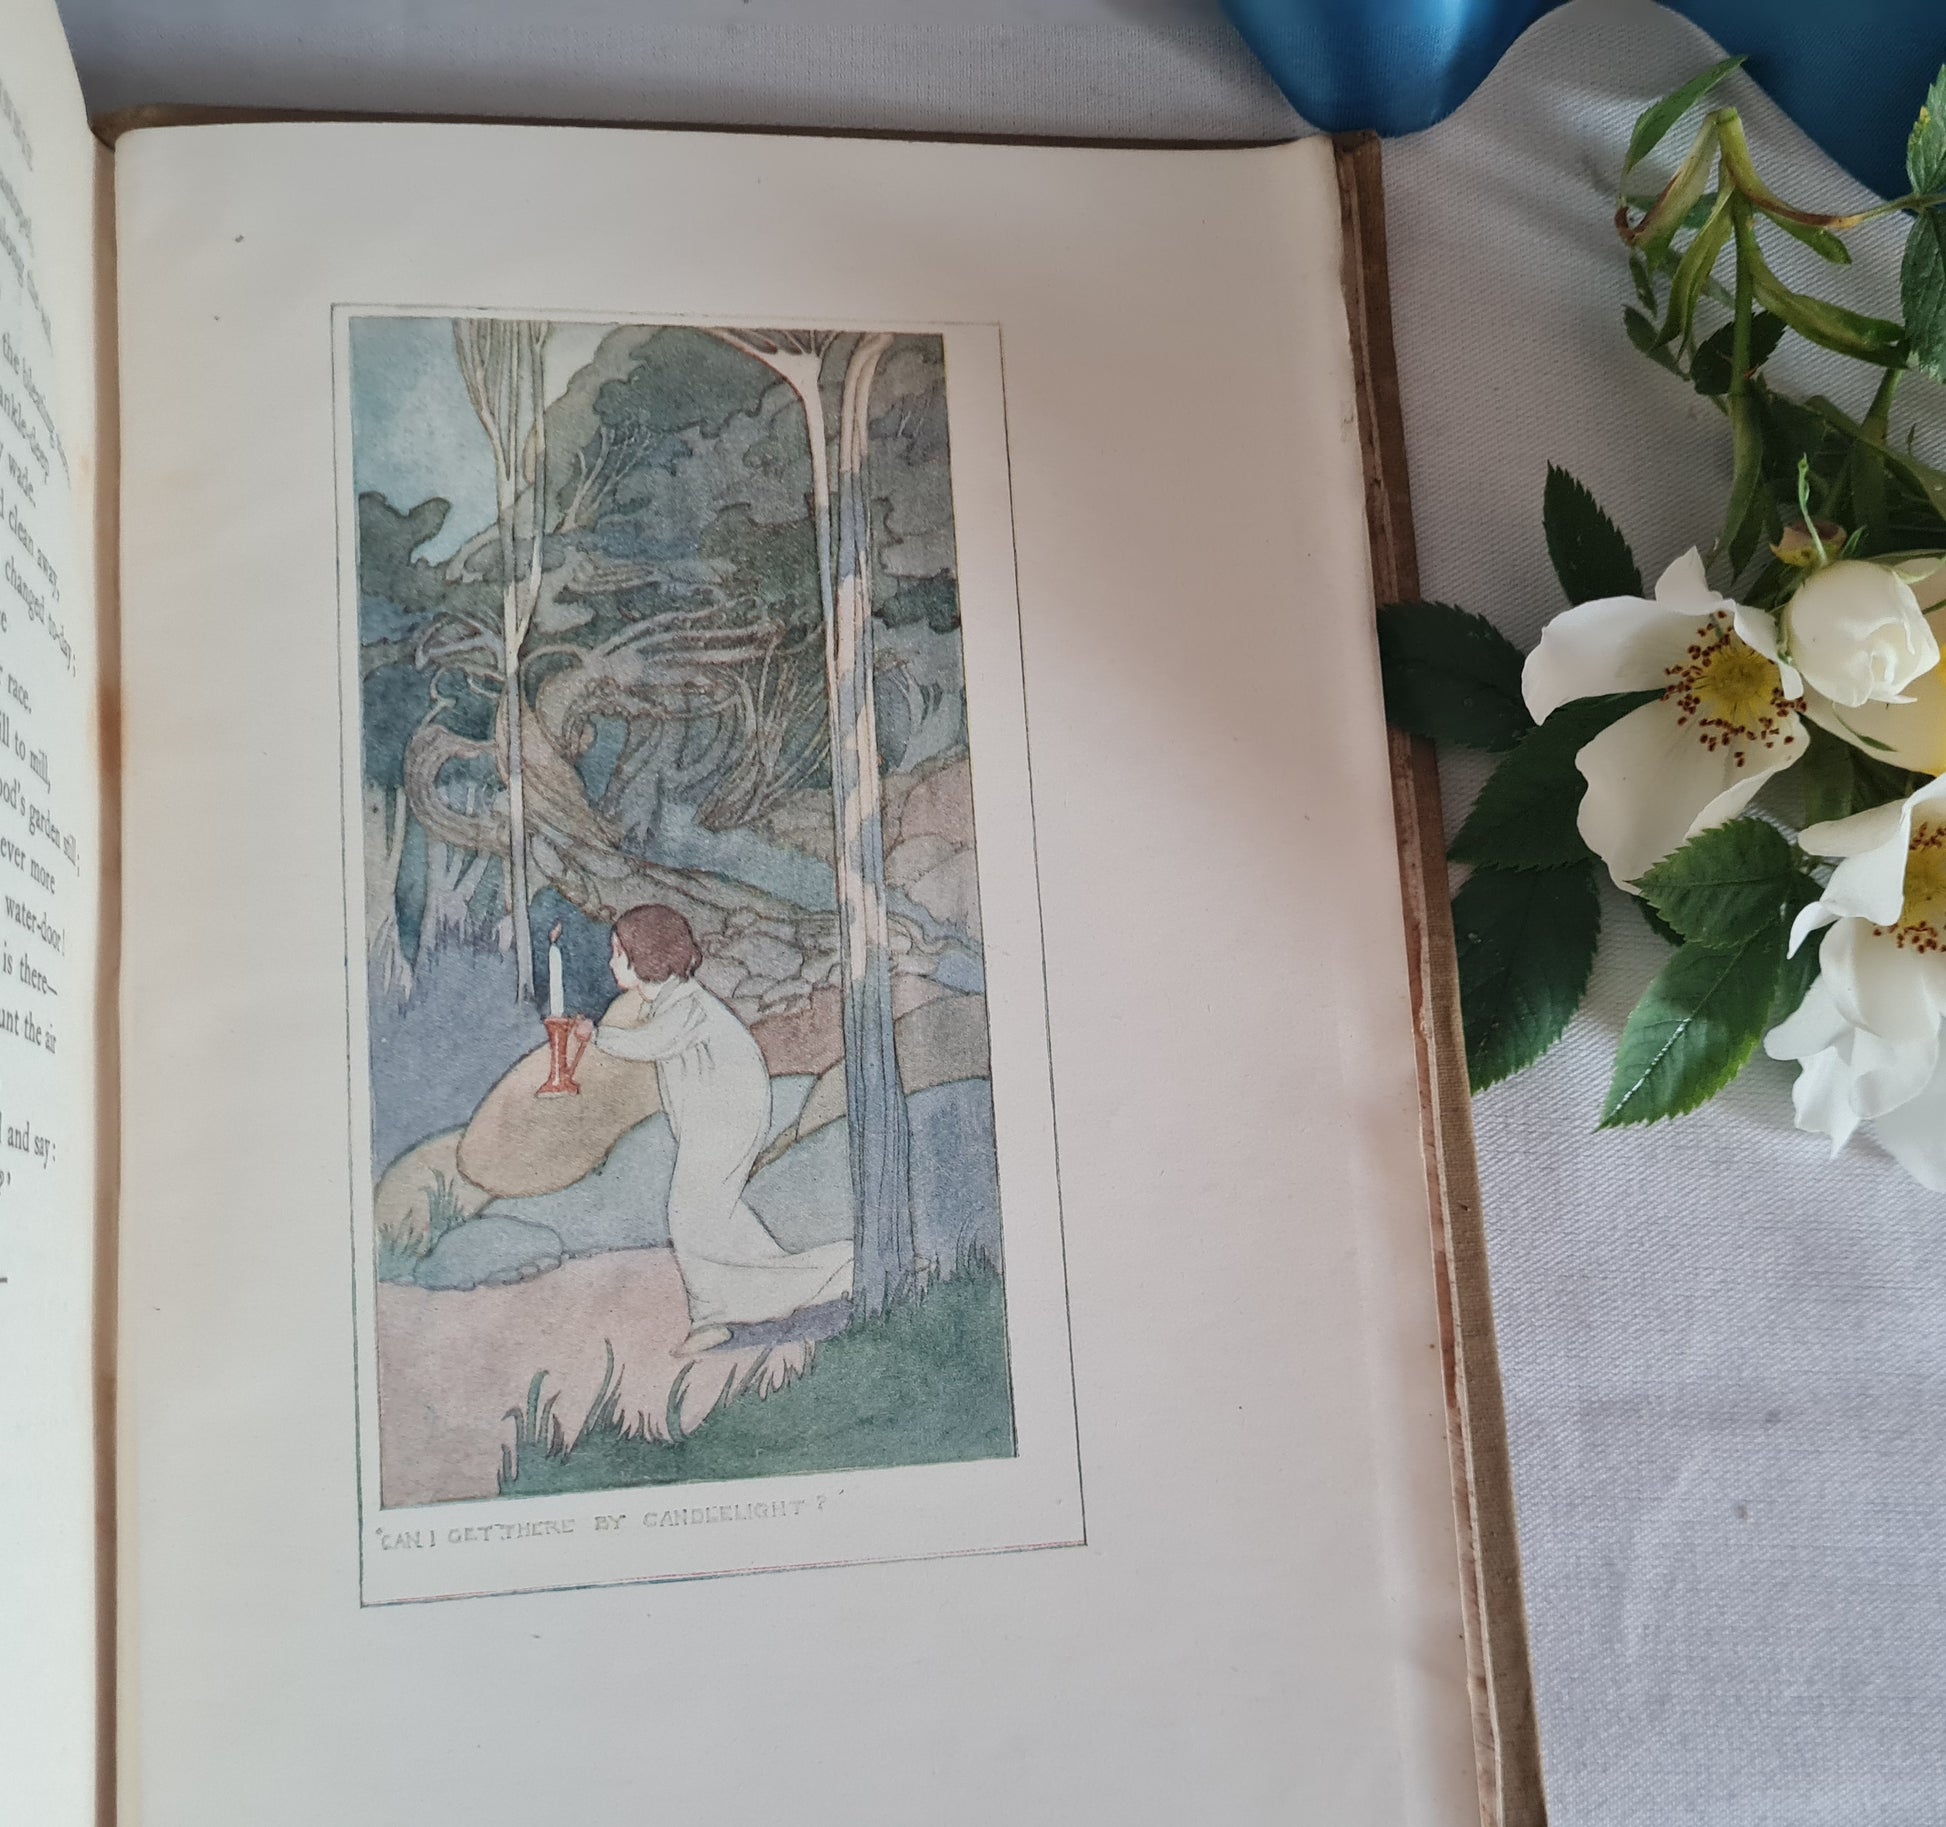 1908 A Child's Garden of Verses by Robert Louis Stevenson / John